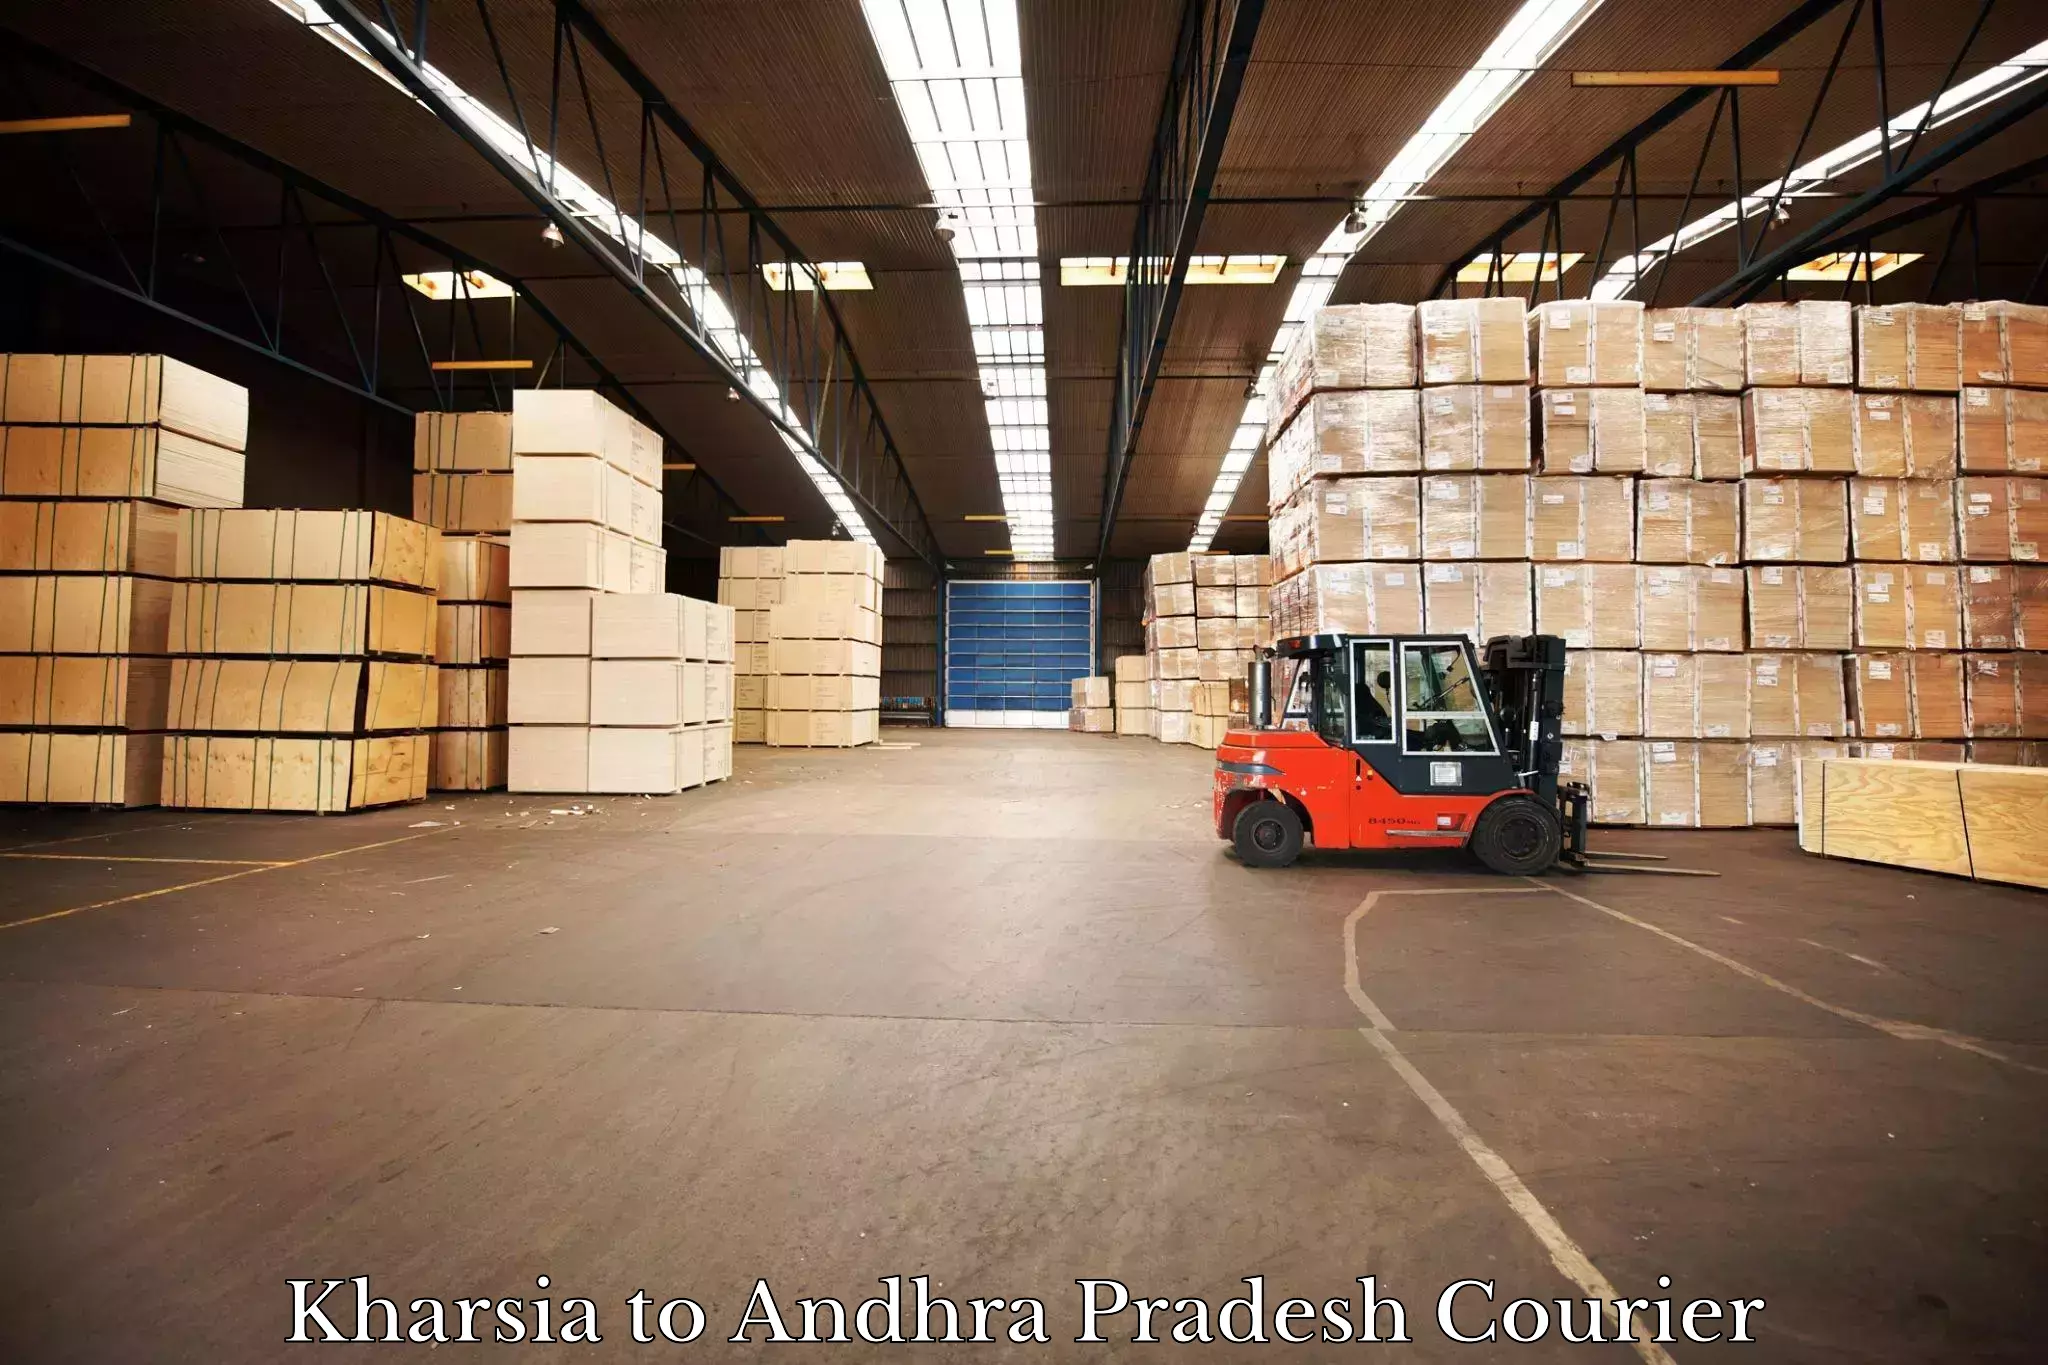 Domestic courier Kharsia to Visakhapatnam Port